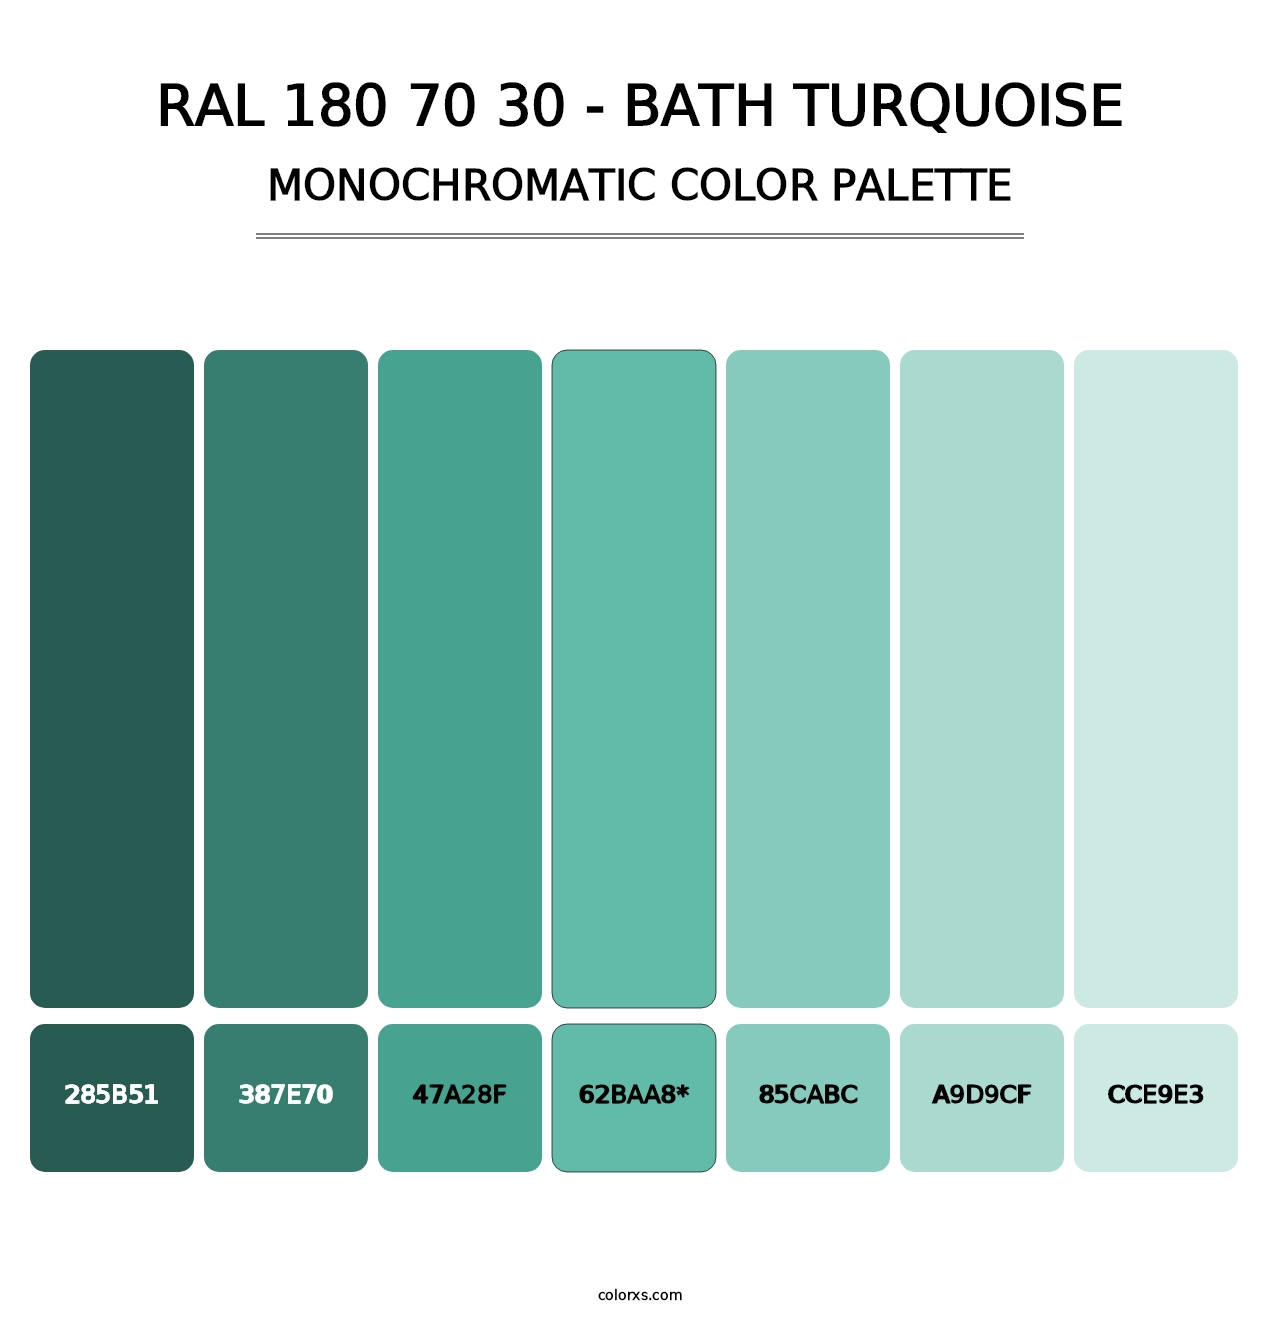 RAL 180 70 30 - Bath Turquoise - Monochromatic Color Palette